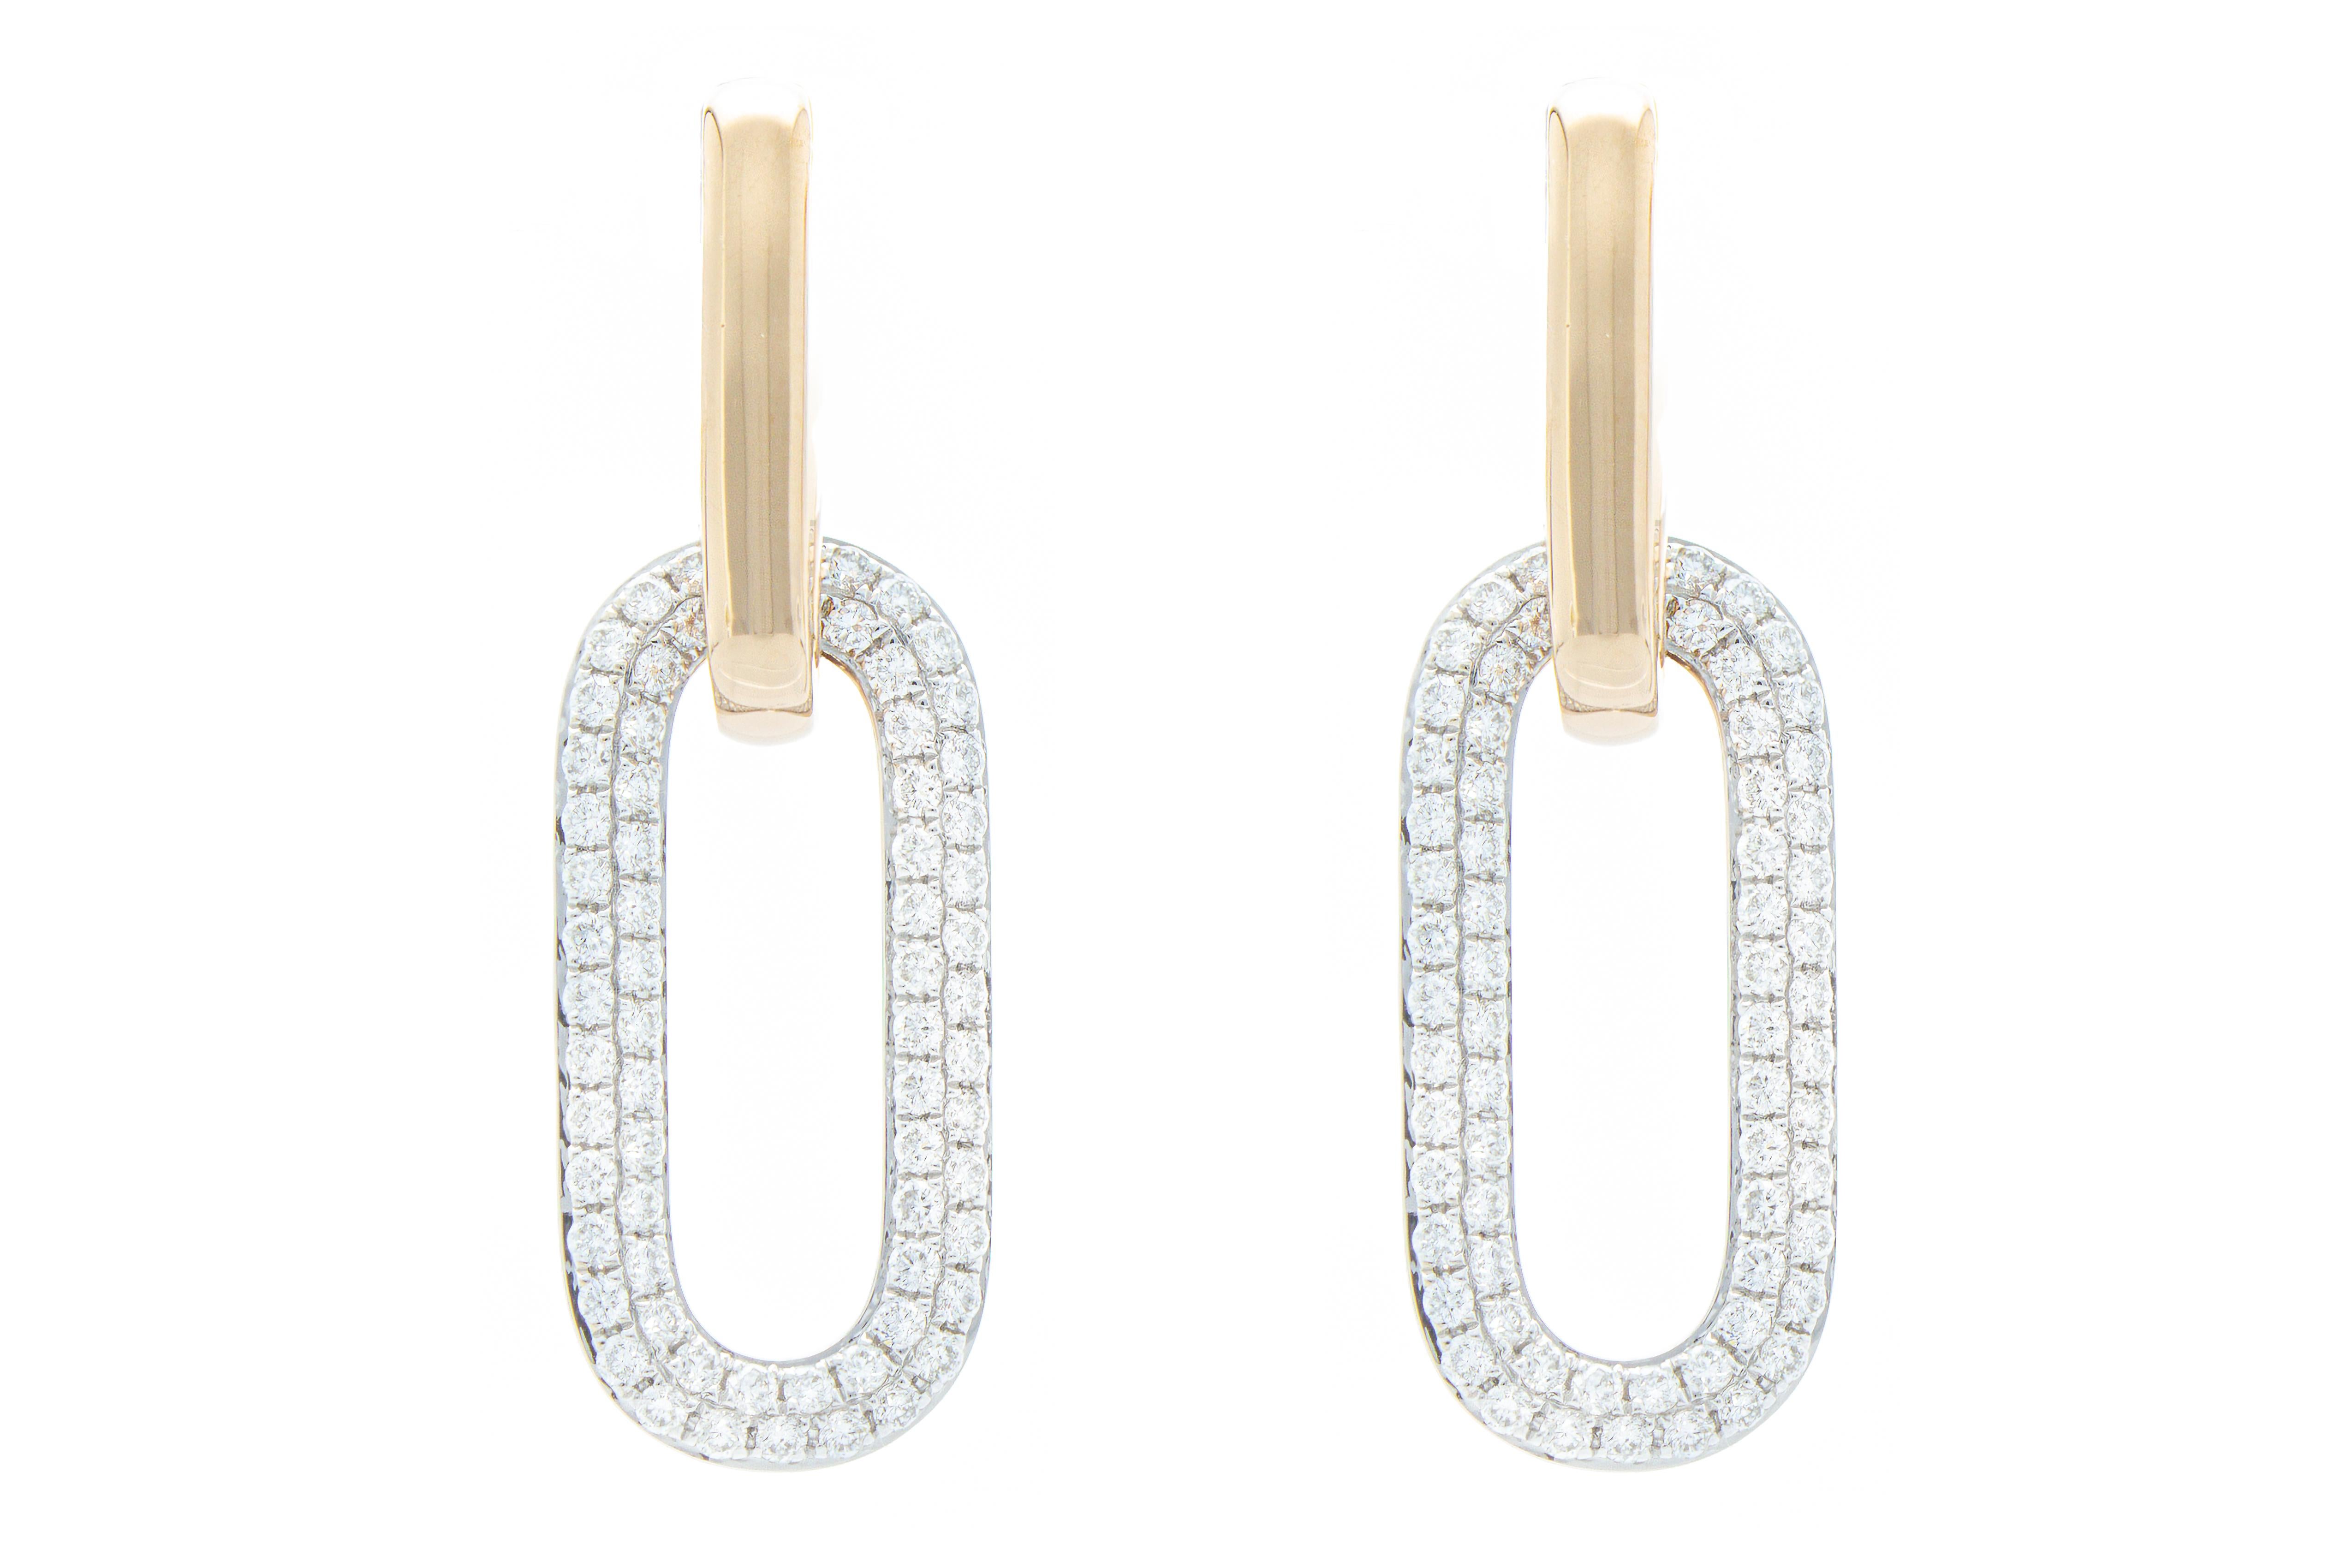 Die Ohrringe des Anhängermodells bestehen aus Stäben, die mit hängenden Rechtecken verbunden sind, auf denen Diamanten im Brillantschliff mit einem Gesamtgewicht von 1,11 Karat gefasst sind. 
Die Ohrringe sind aus 18 Karat Rosé- und Weißgold.

Karat